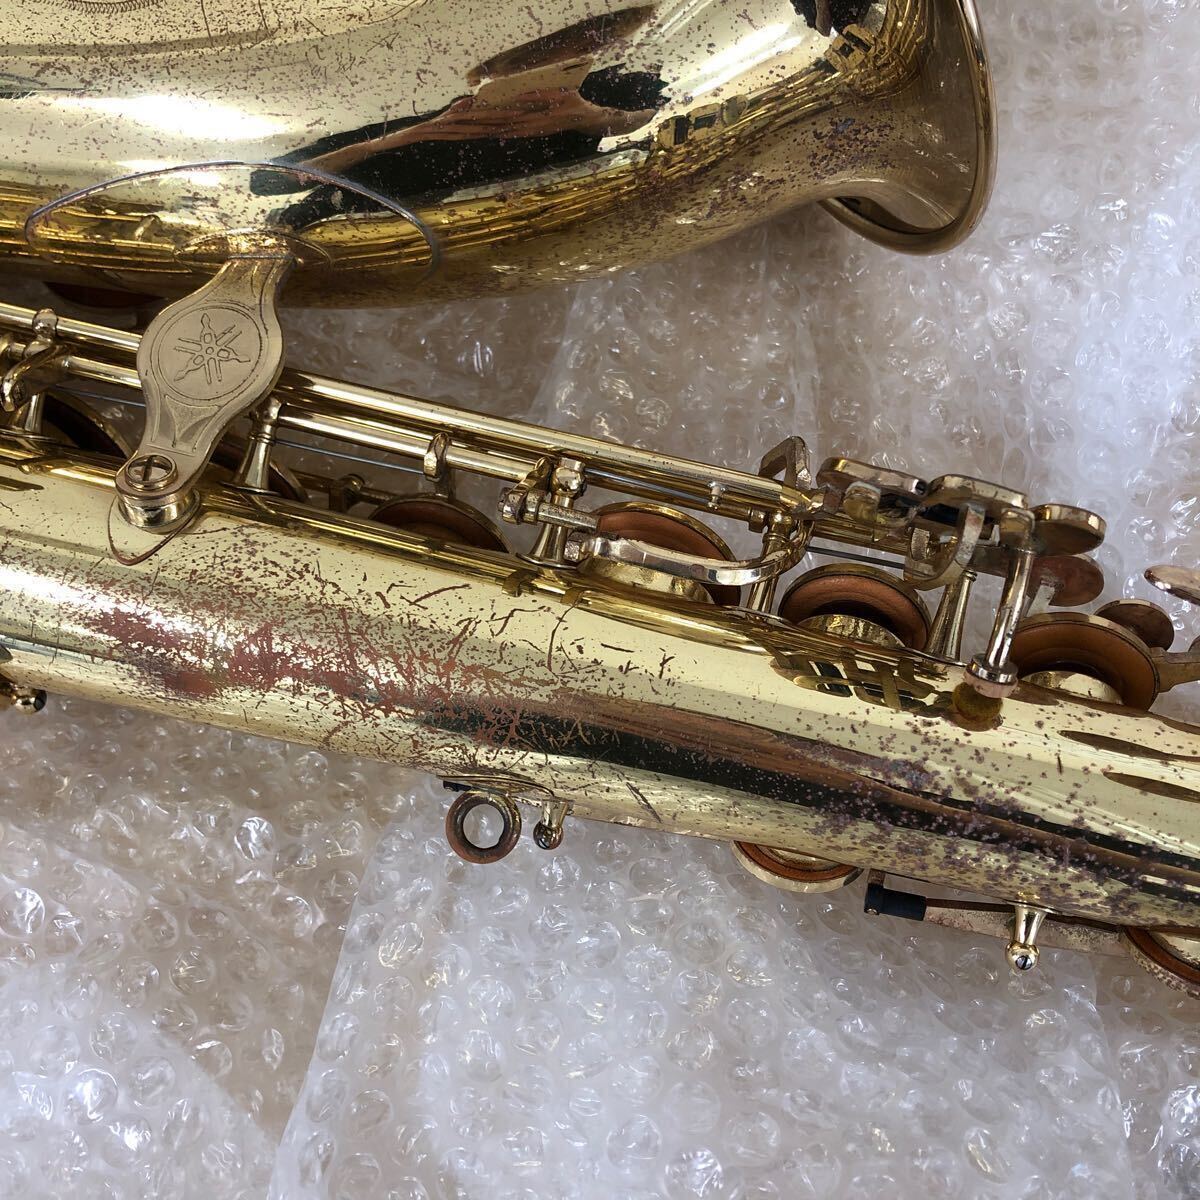  б/у товар * текущее состояние YAMAHA тенор саксофон YTS-61 жесткий чехол есть мундштук ×1 ремешок духовые инструменты * музыкальные инструменты 